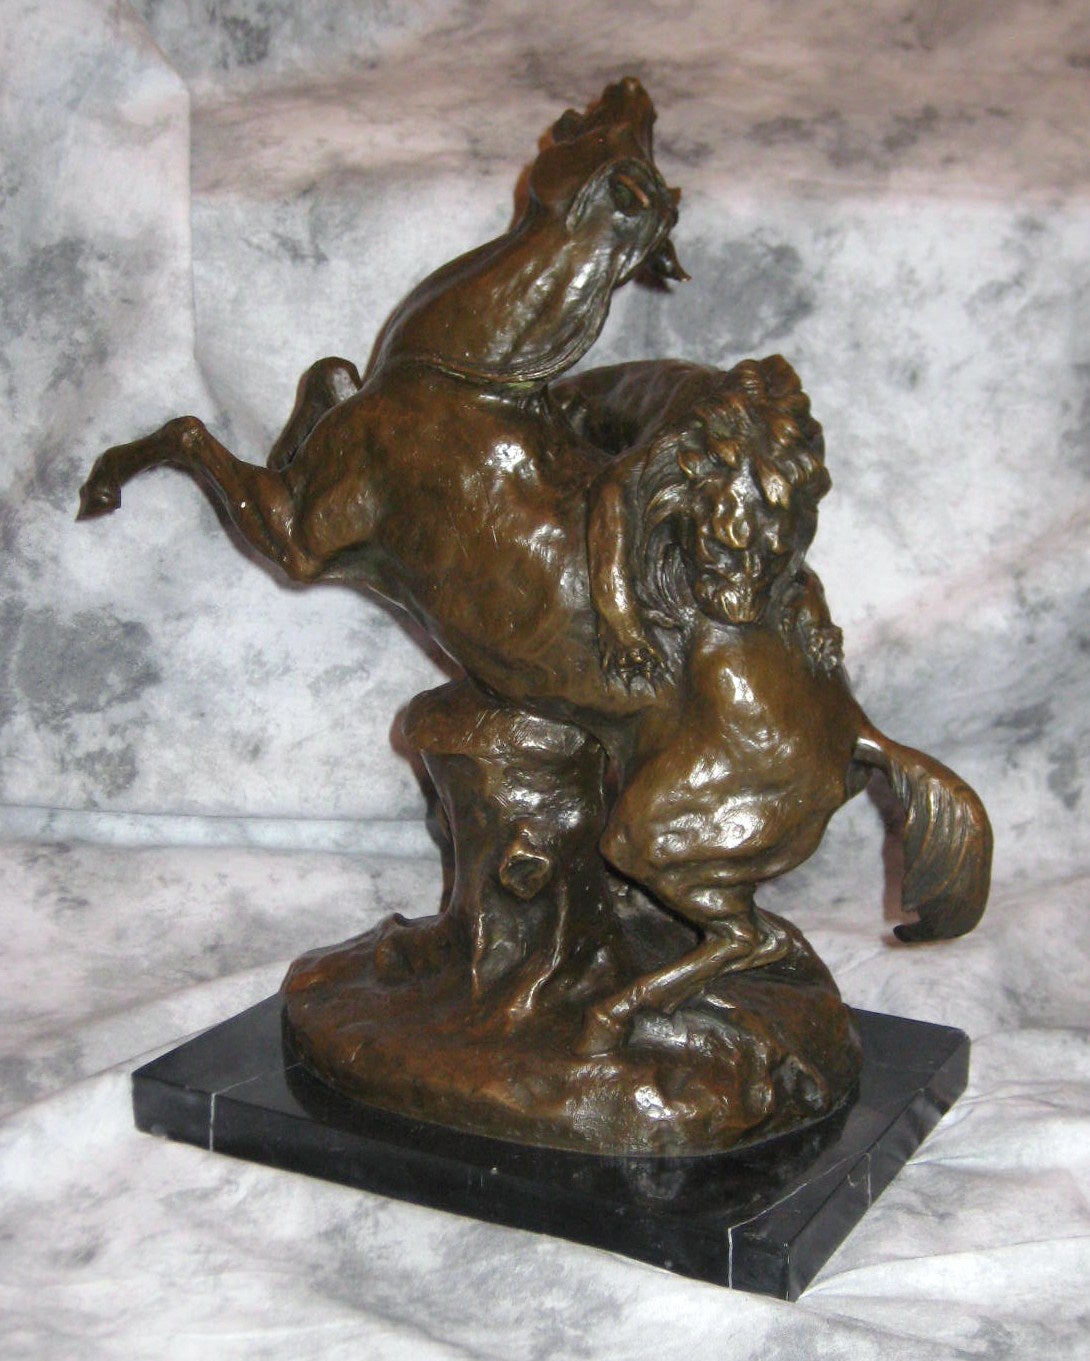 Antoine-Louis Barye, Bronze Sculpture "Cheval Surpris Par Un Lion"